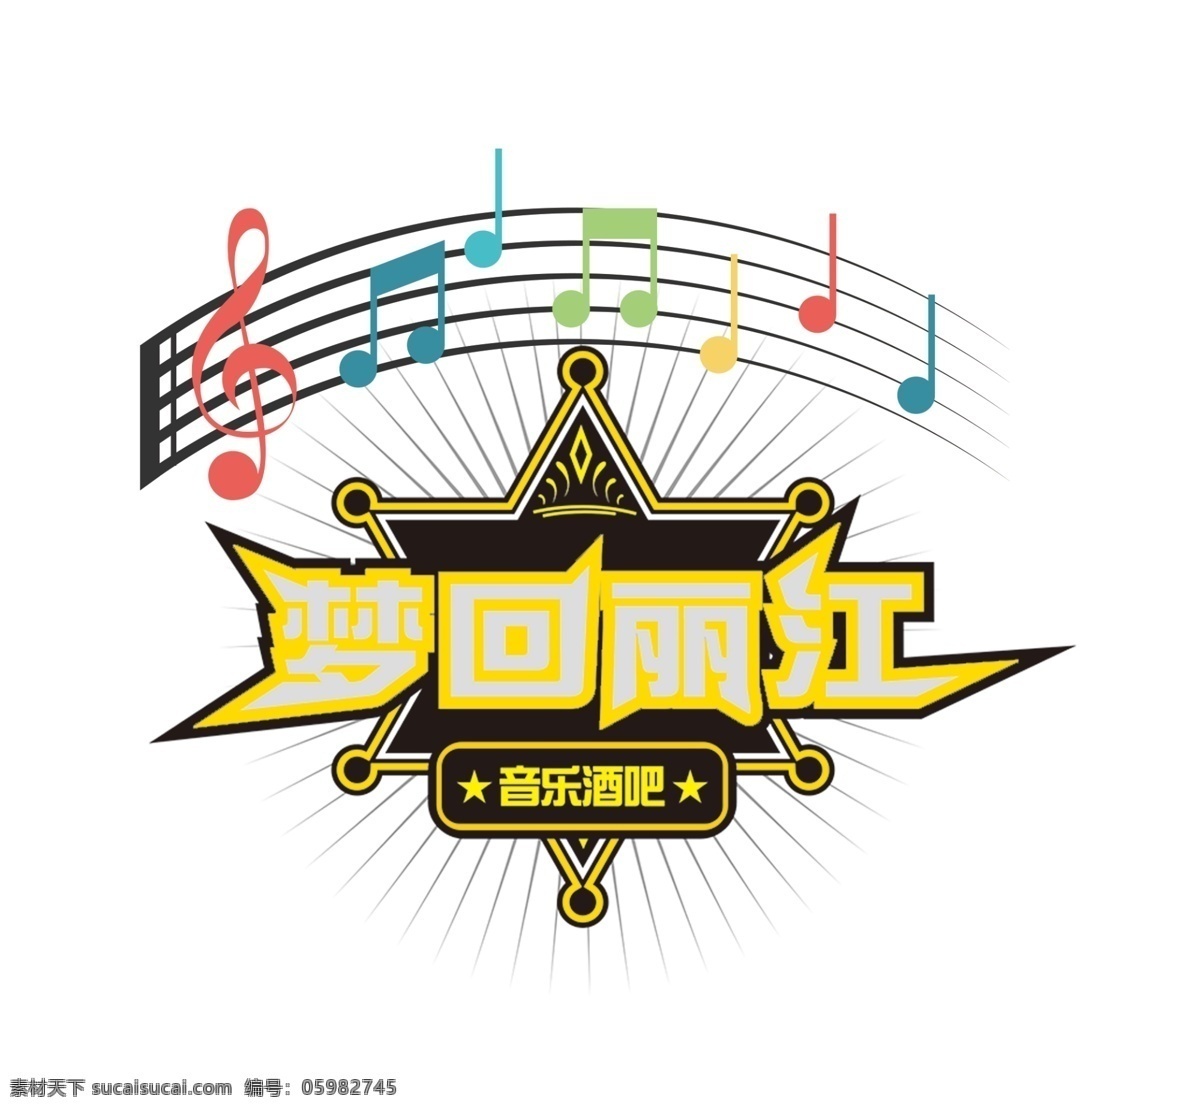 酒吧logo 酒吧 logo设计 音符 音乐酒吧 音乐 原创共享海报 标志图标 企业 logo 标志